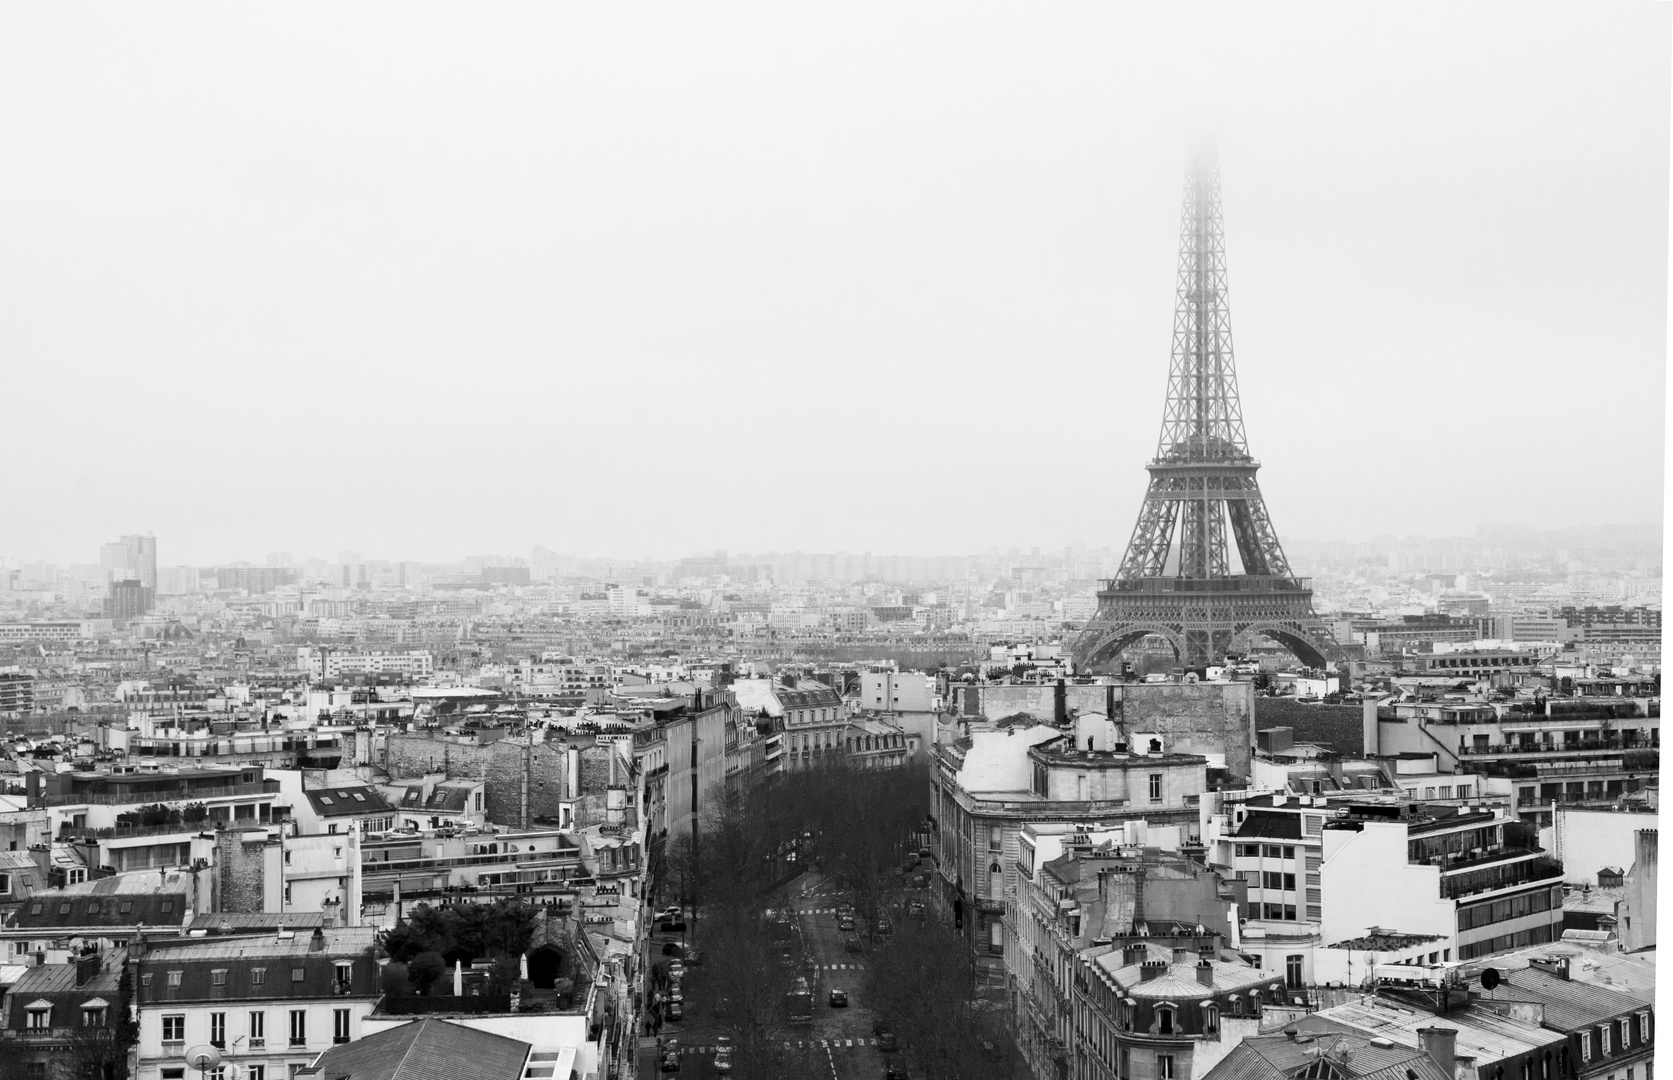 Paris is Paris